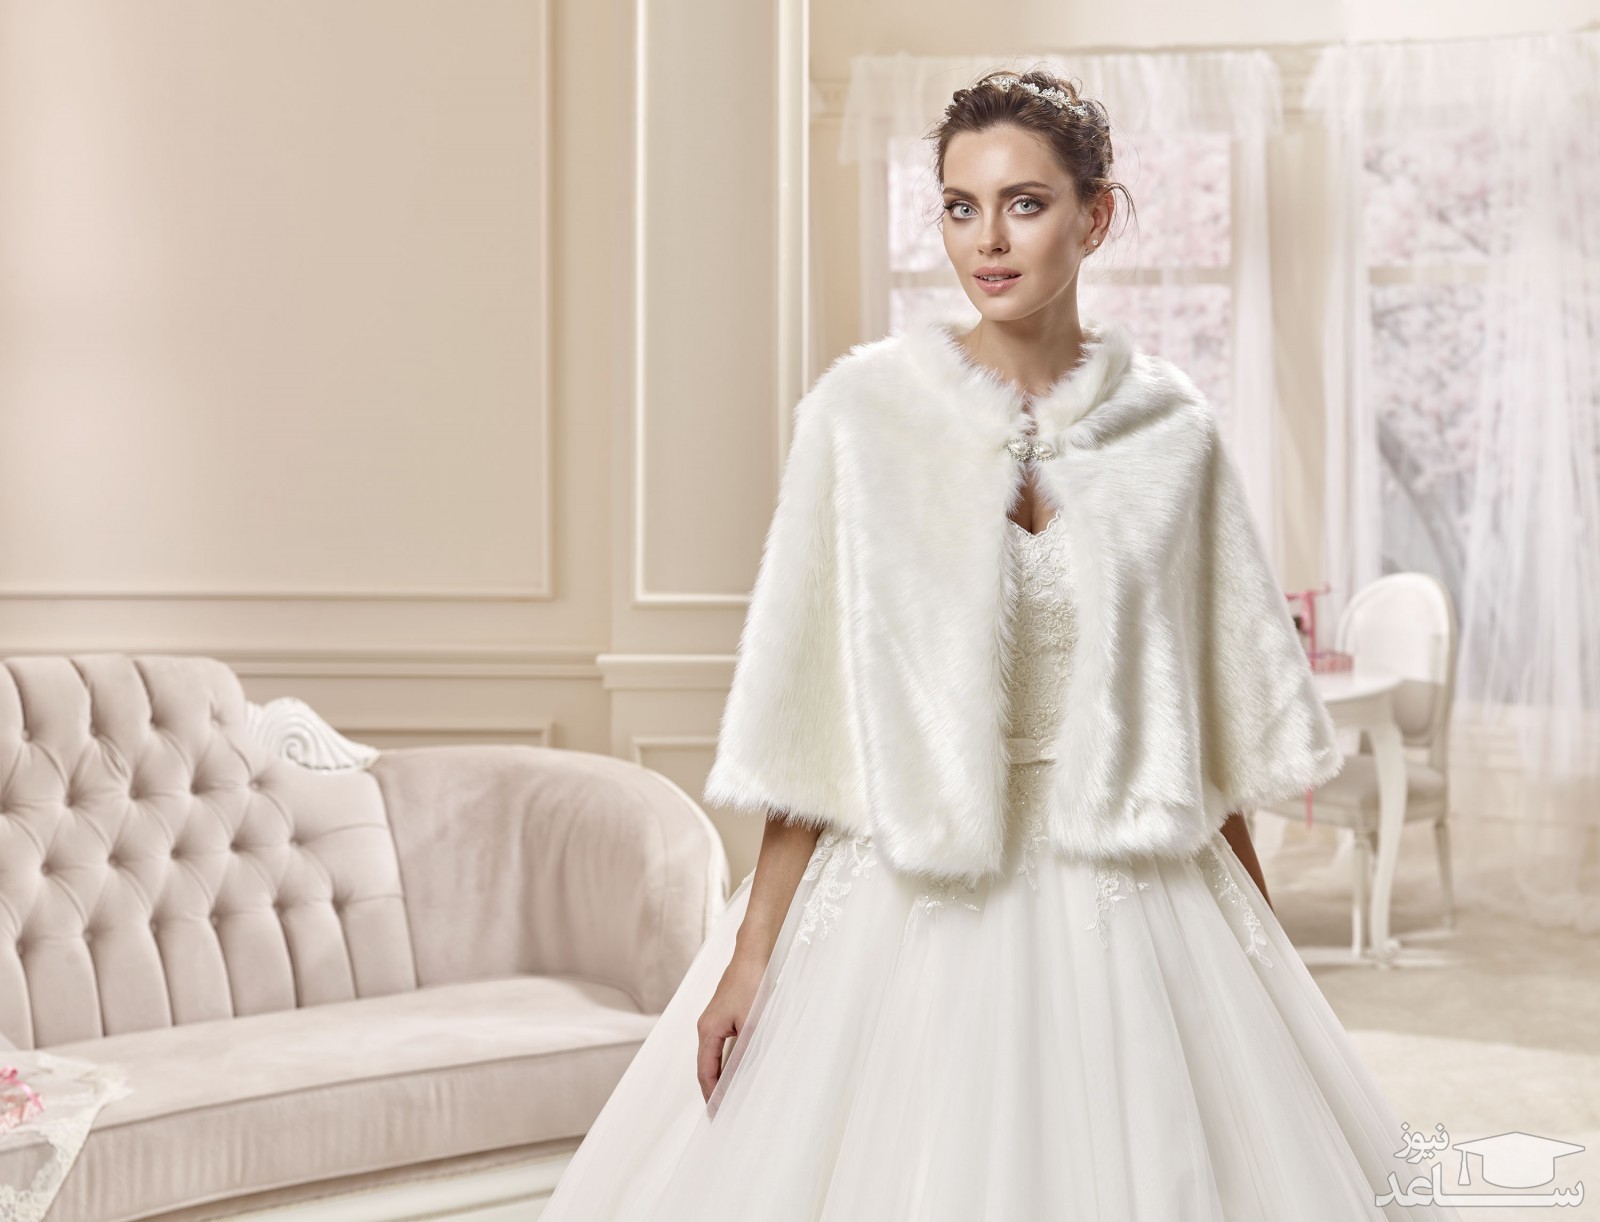 معرفی انواع شنل عروس متناسب با لباس عروس